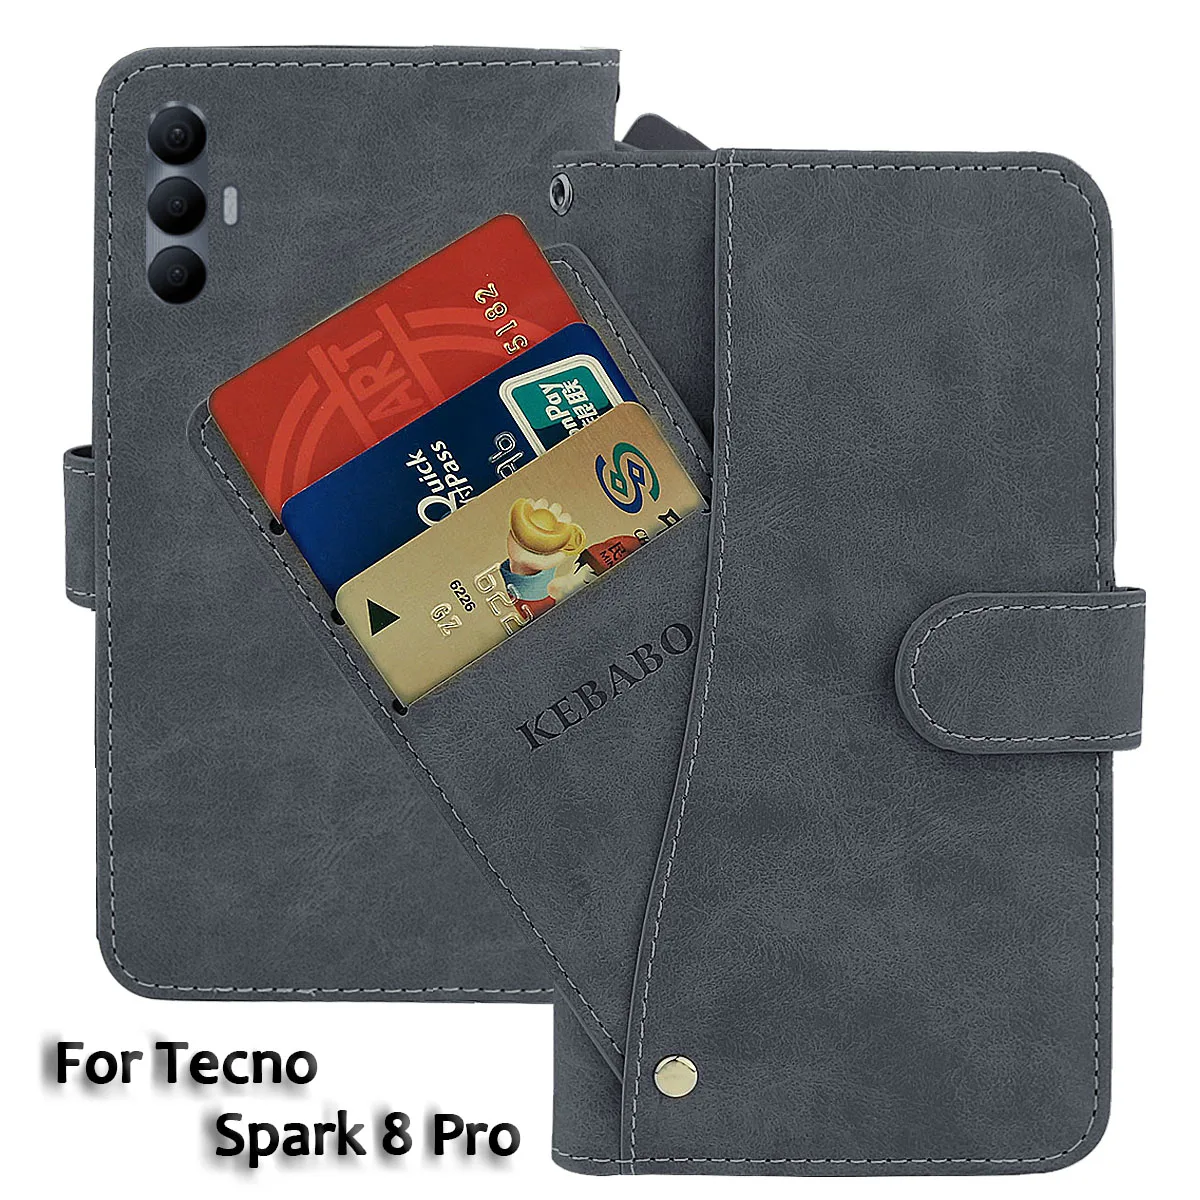 

Кожаный чехол-кошелек Tecno Spark 8 Pro, модный роскошный флип-чехол 6,8 дюйма с передней картой Spark 8 Pro Tecno, магнитные чехлы для телефонов